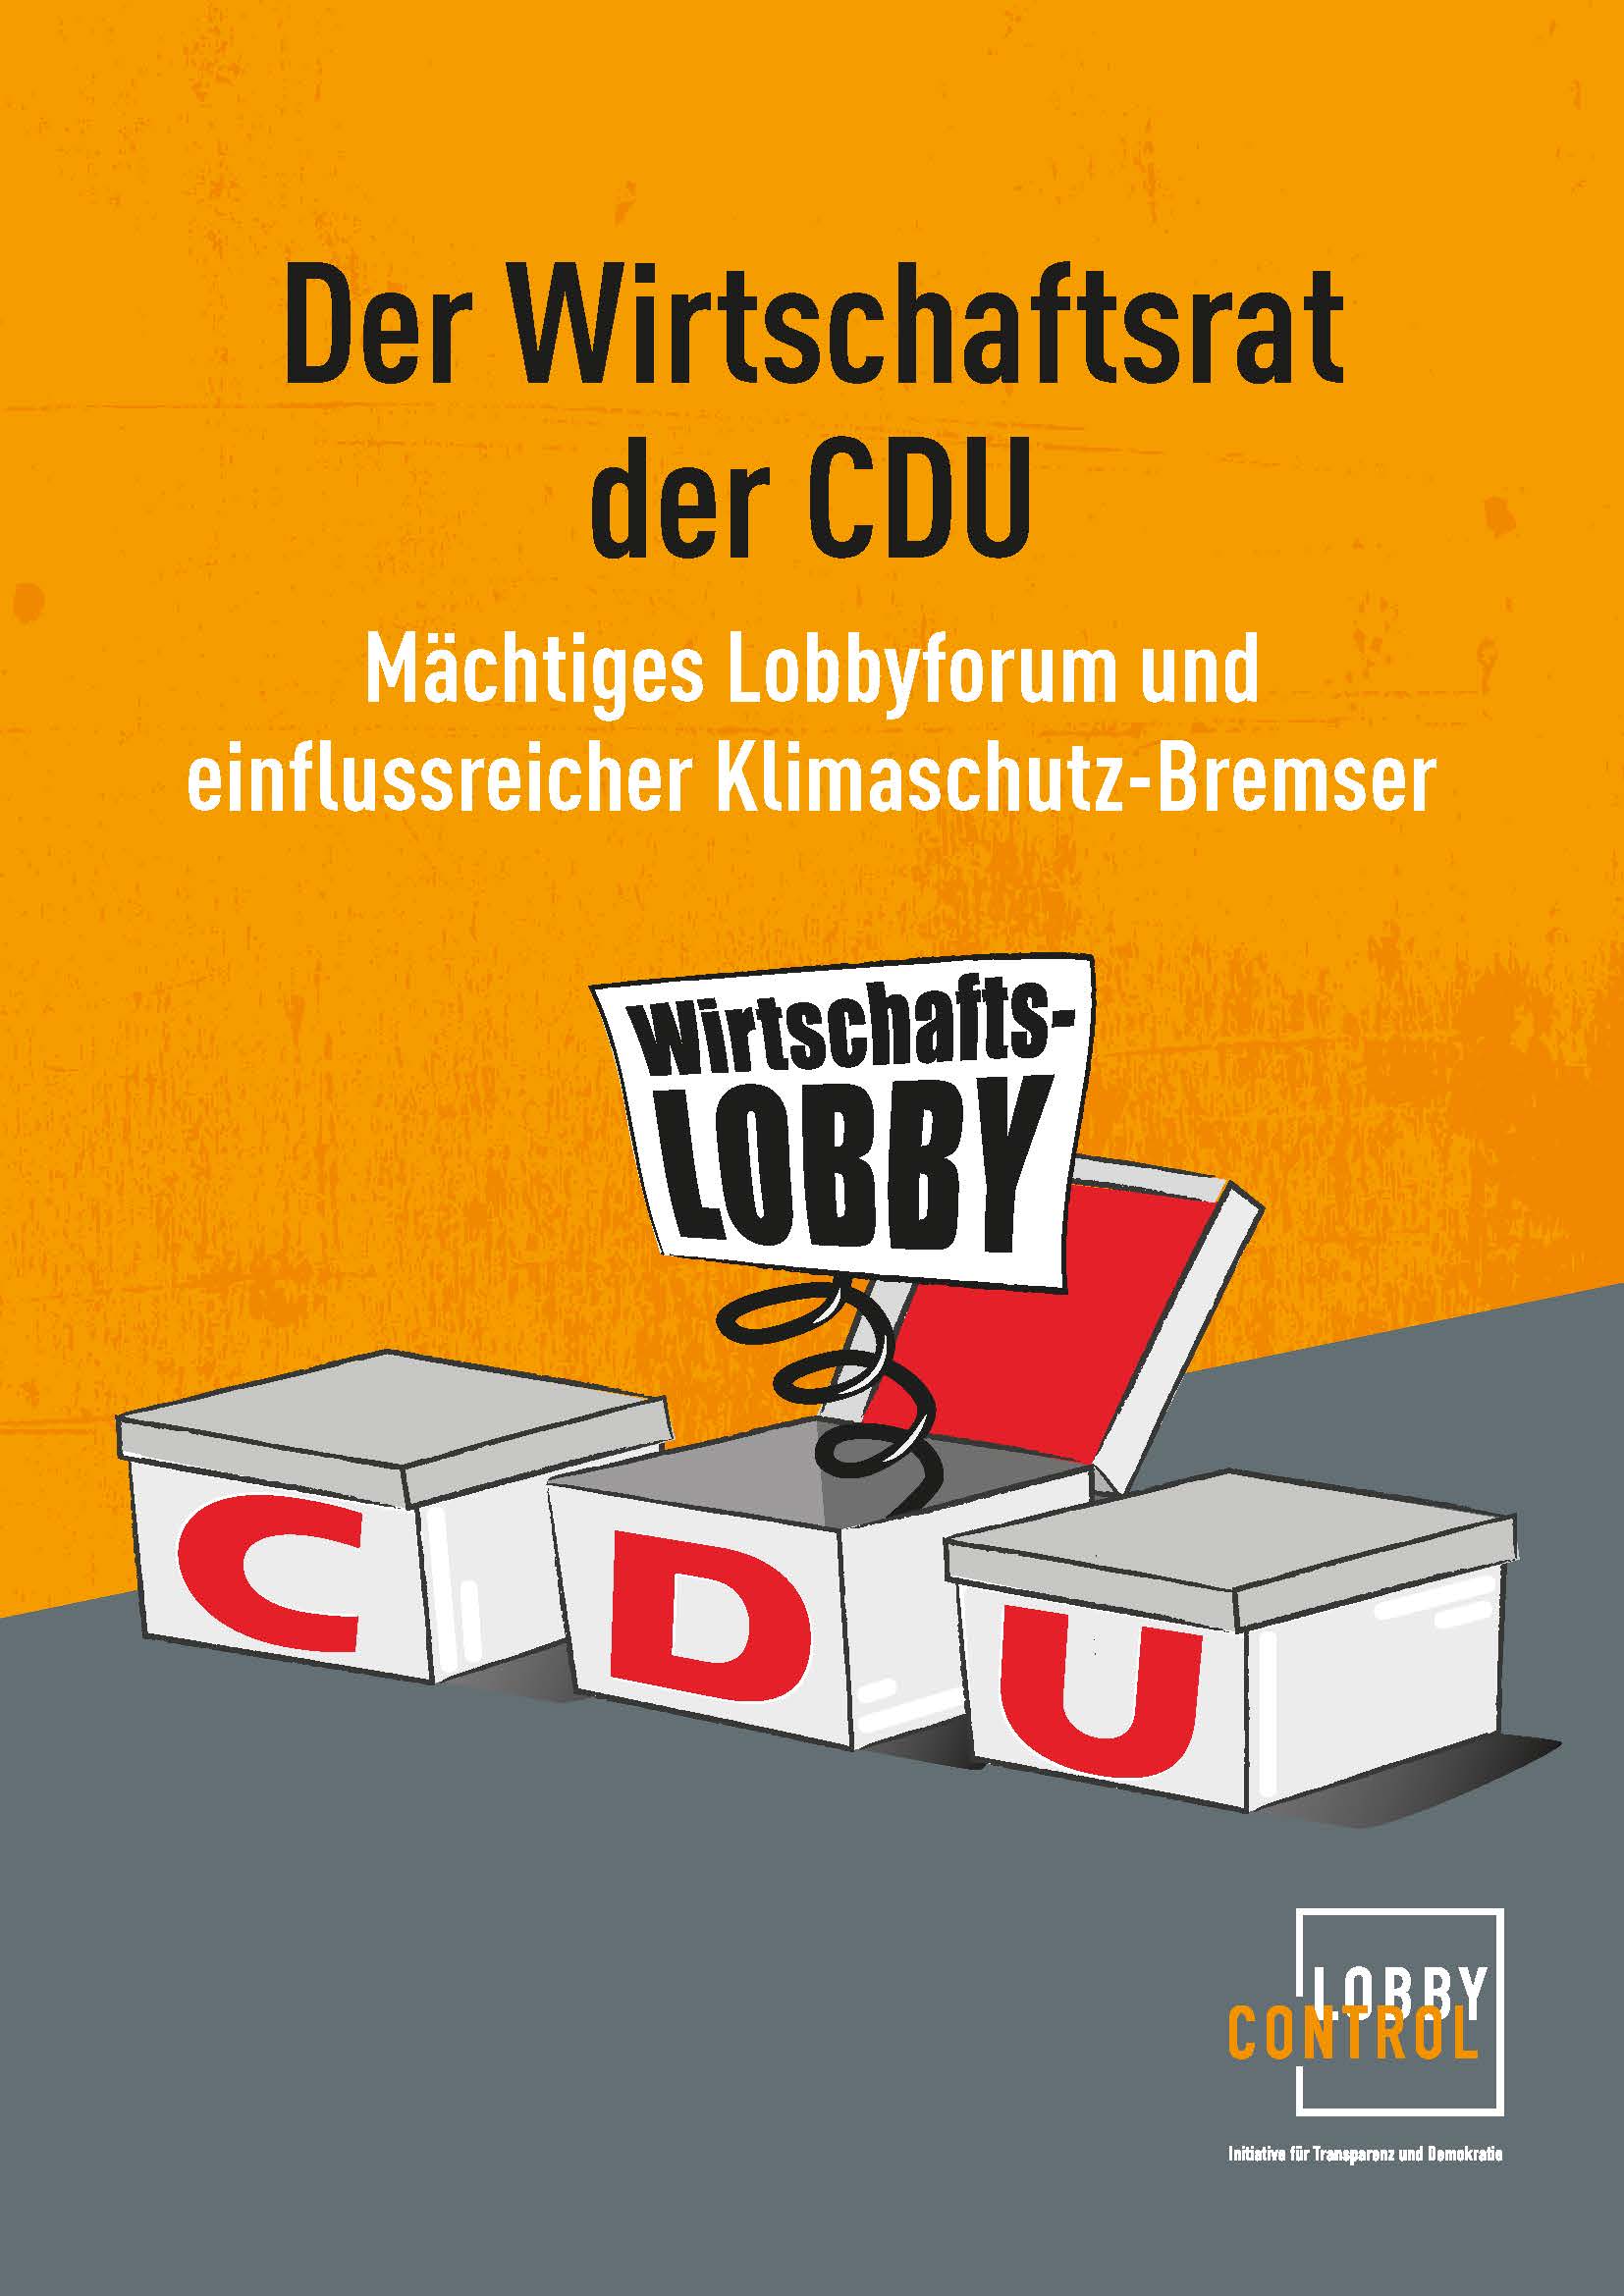 Titelblatt einer Studie: Grafik mit 3 Boxen, die mit CDU Bezeichnet sind. Aus einer Box springt eine Feder mit dem Schild "Wirtschaftslobby"